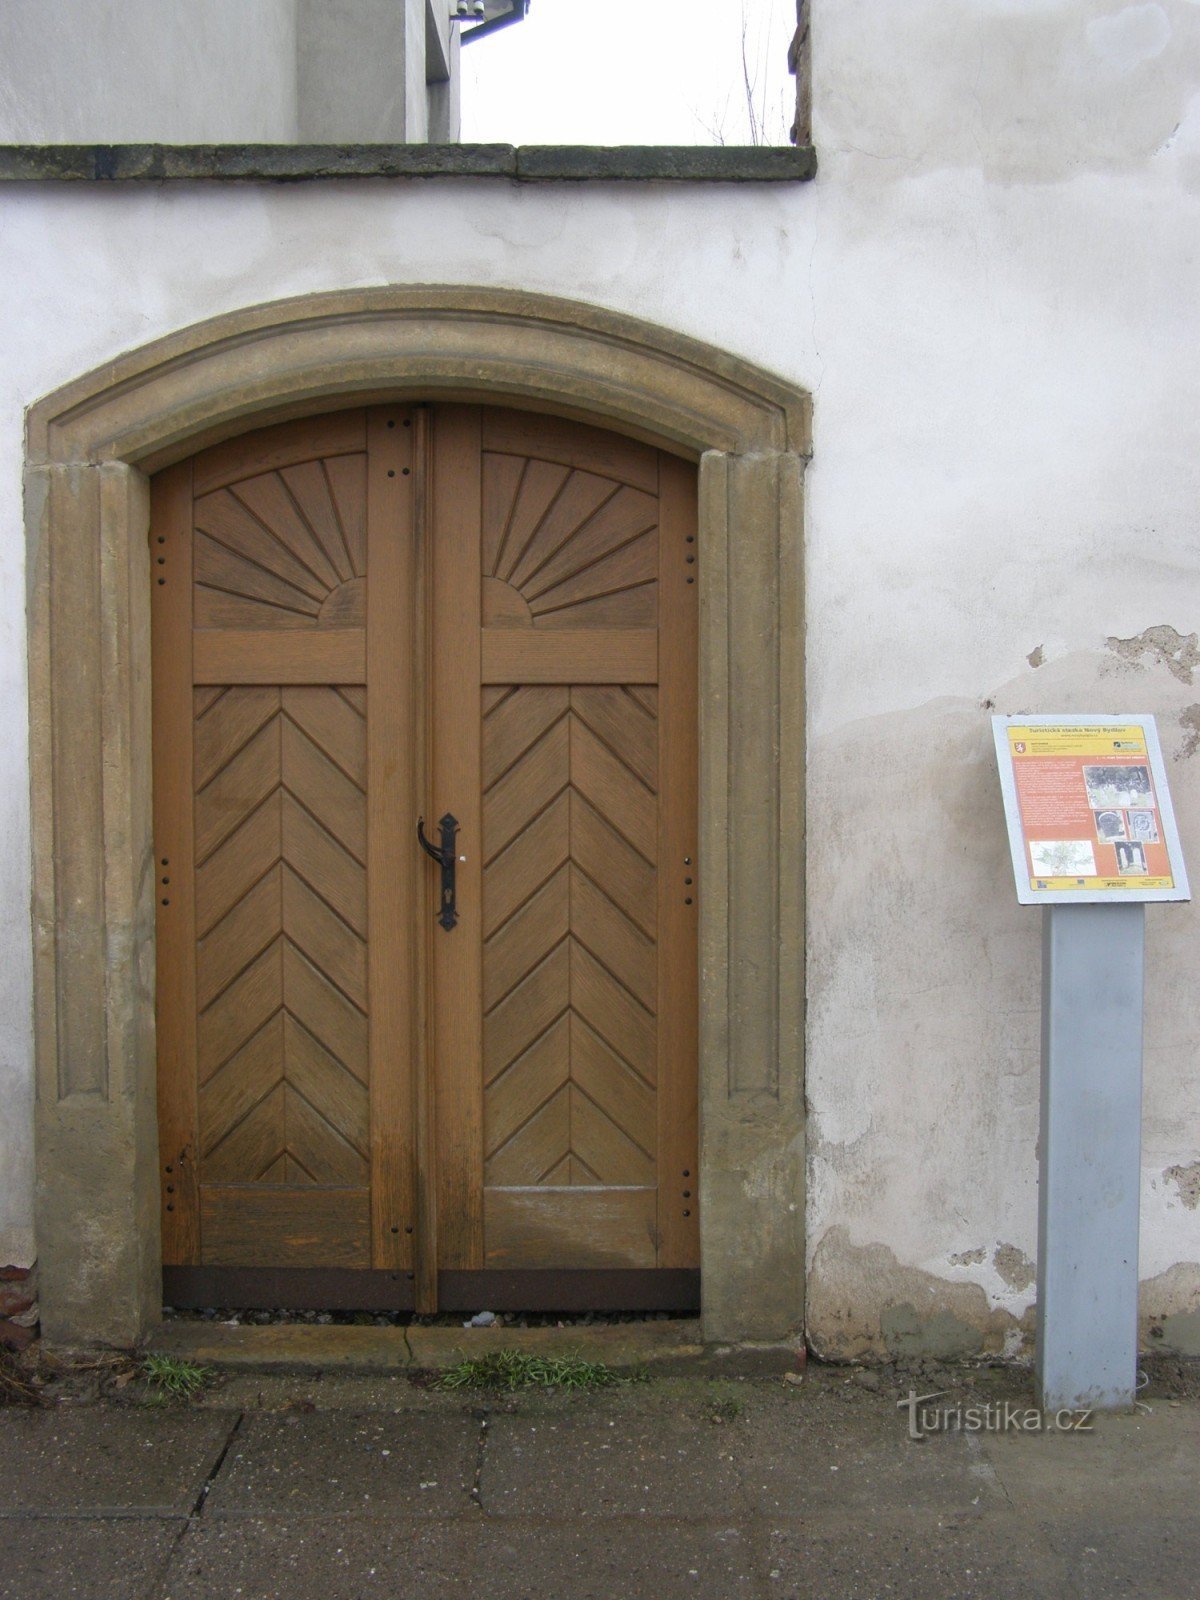 Nový Bydžov - Cementerio judío, puerta de entrada